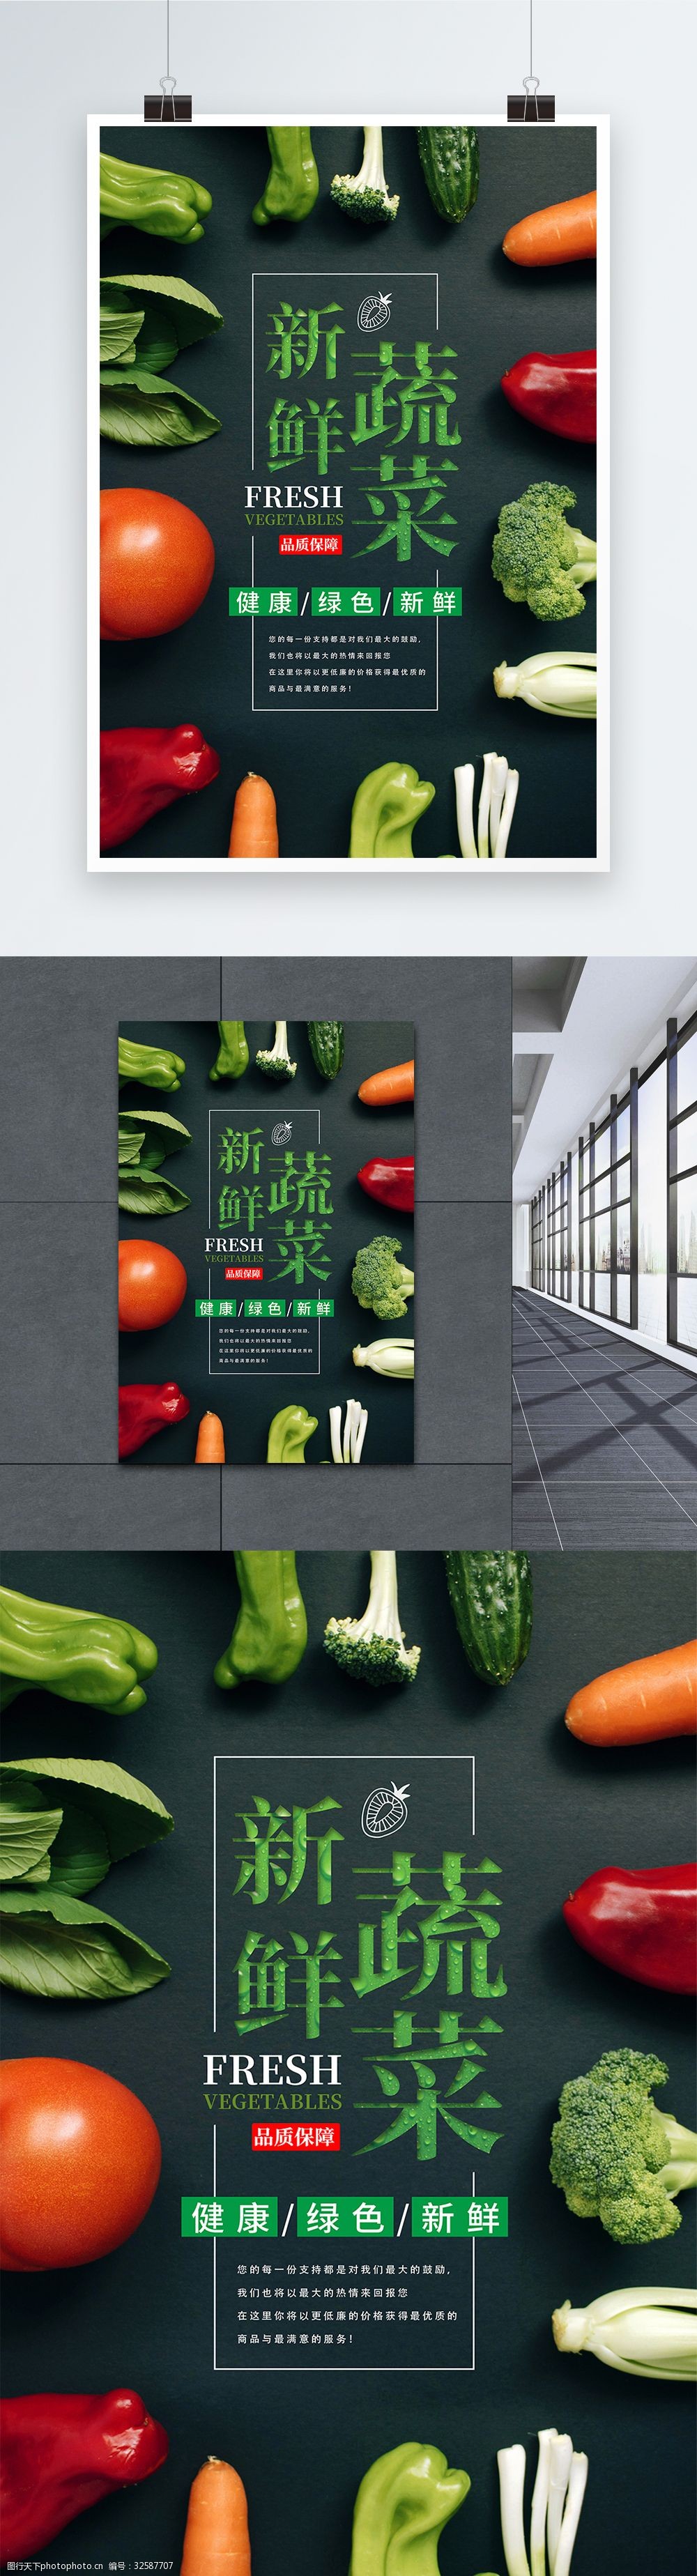 关键词:绿色新鲜蔬菜海报 生鲜果蔬 蔬菜 水果 促销 超市 果蔬 美味